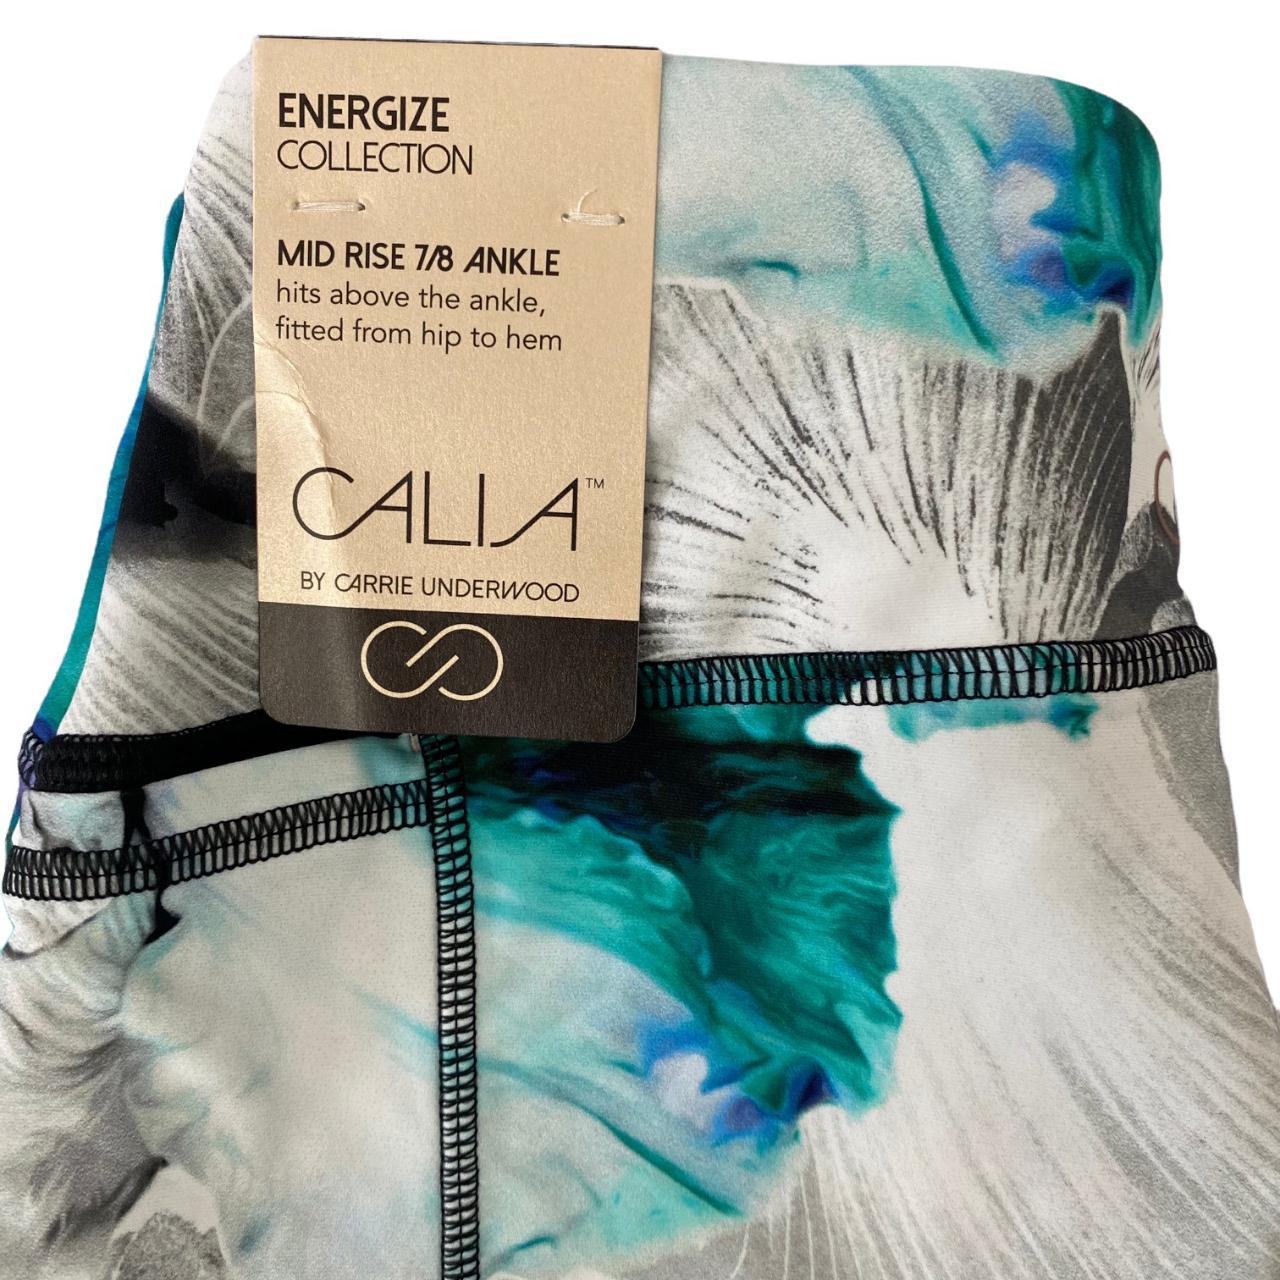 Energize CALIA by Carrie Underwood leggings in - Depop